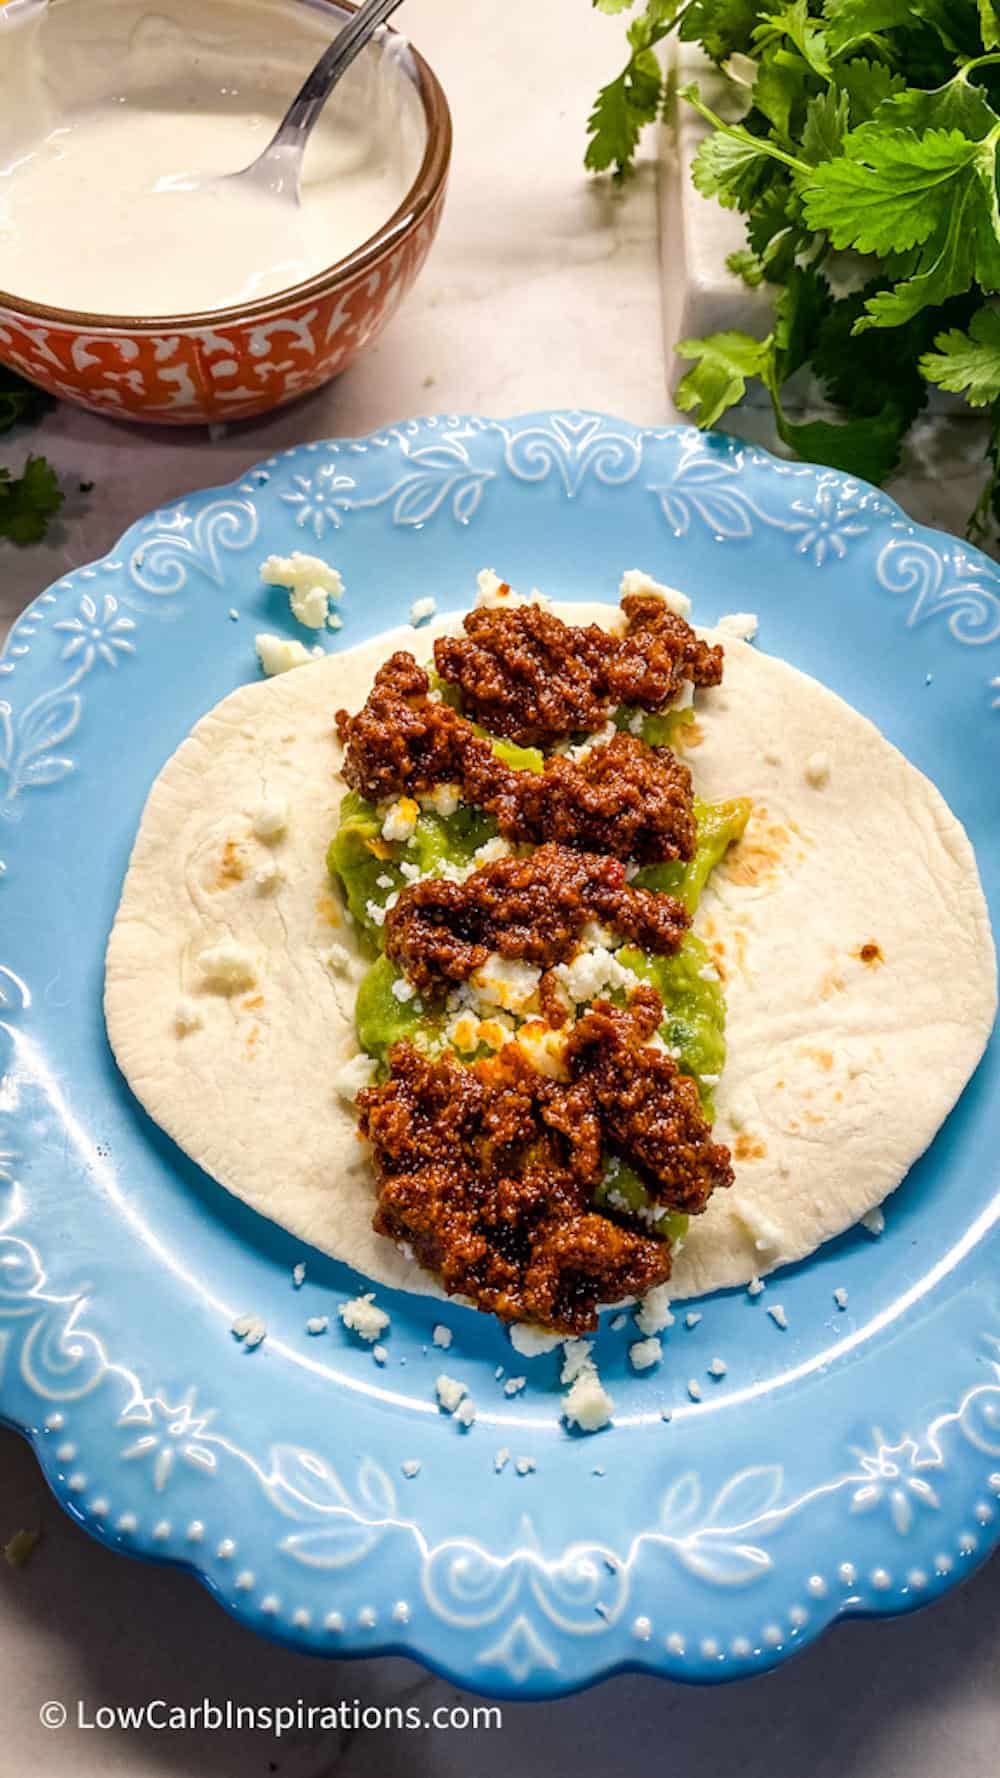 Taco on a blue plate